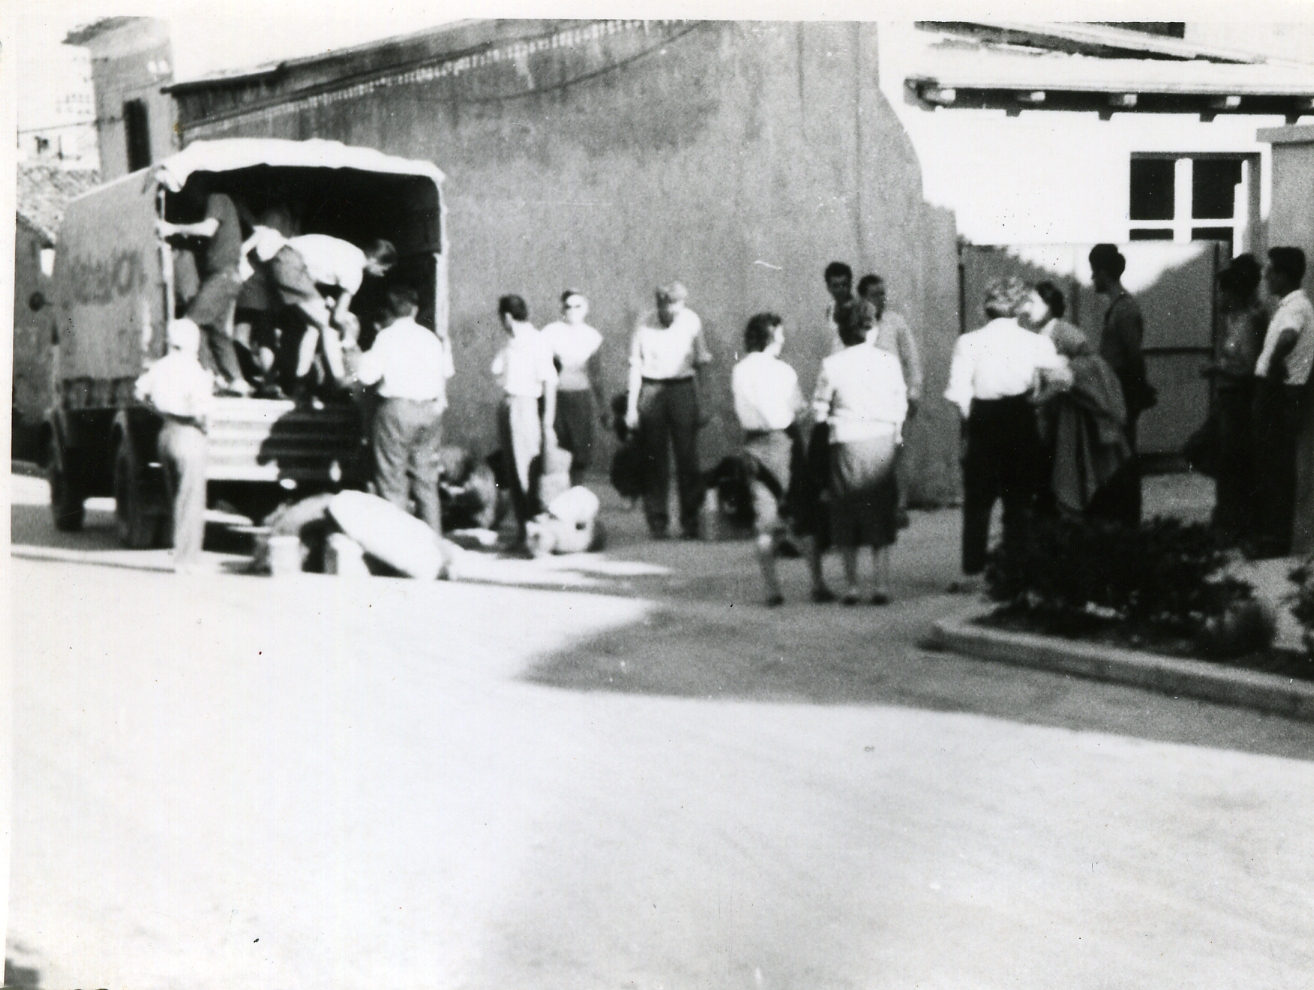 Odhod na delavno akcijo - izgradnja koče na Slavniku 1965